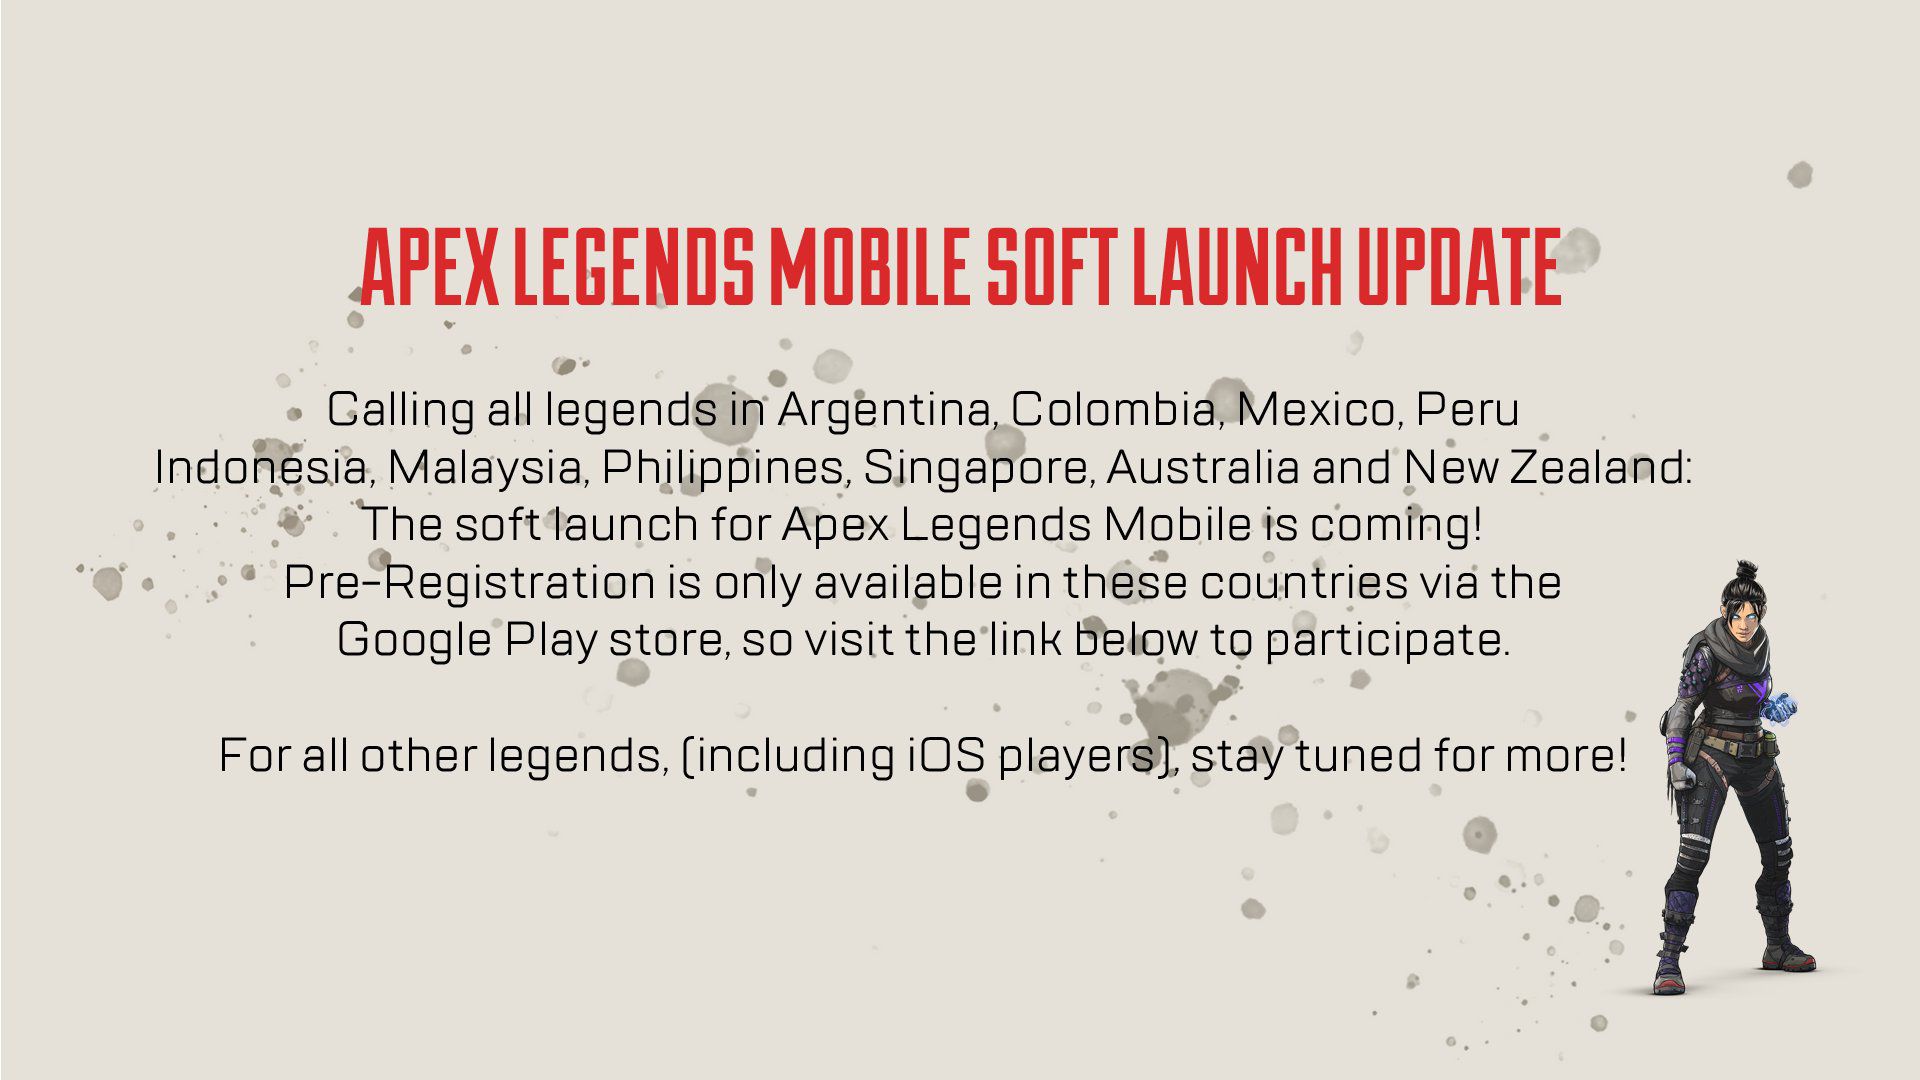 APEX Legends Mobile ya se puede descargar en la Google Play Store